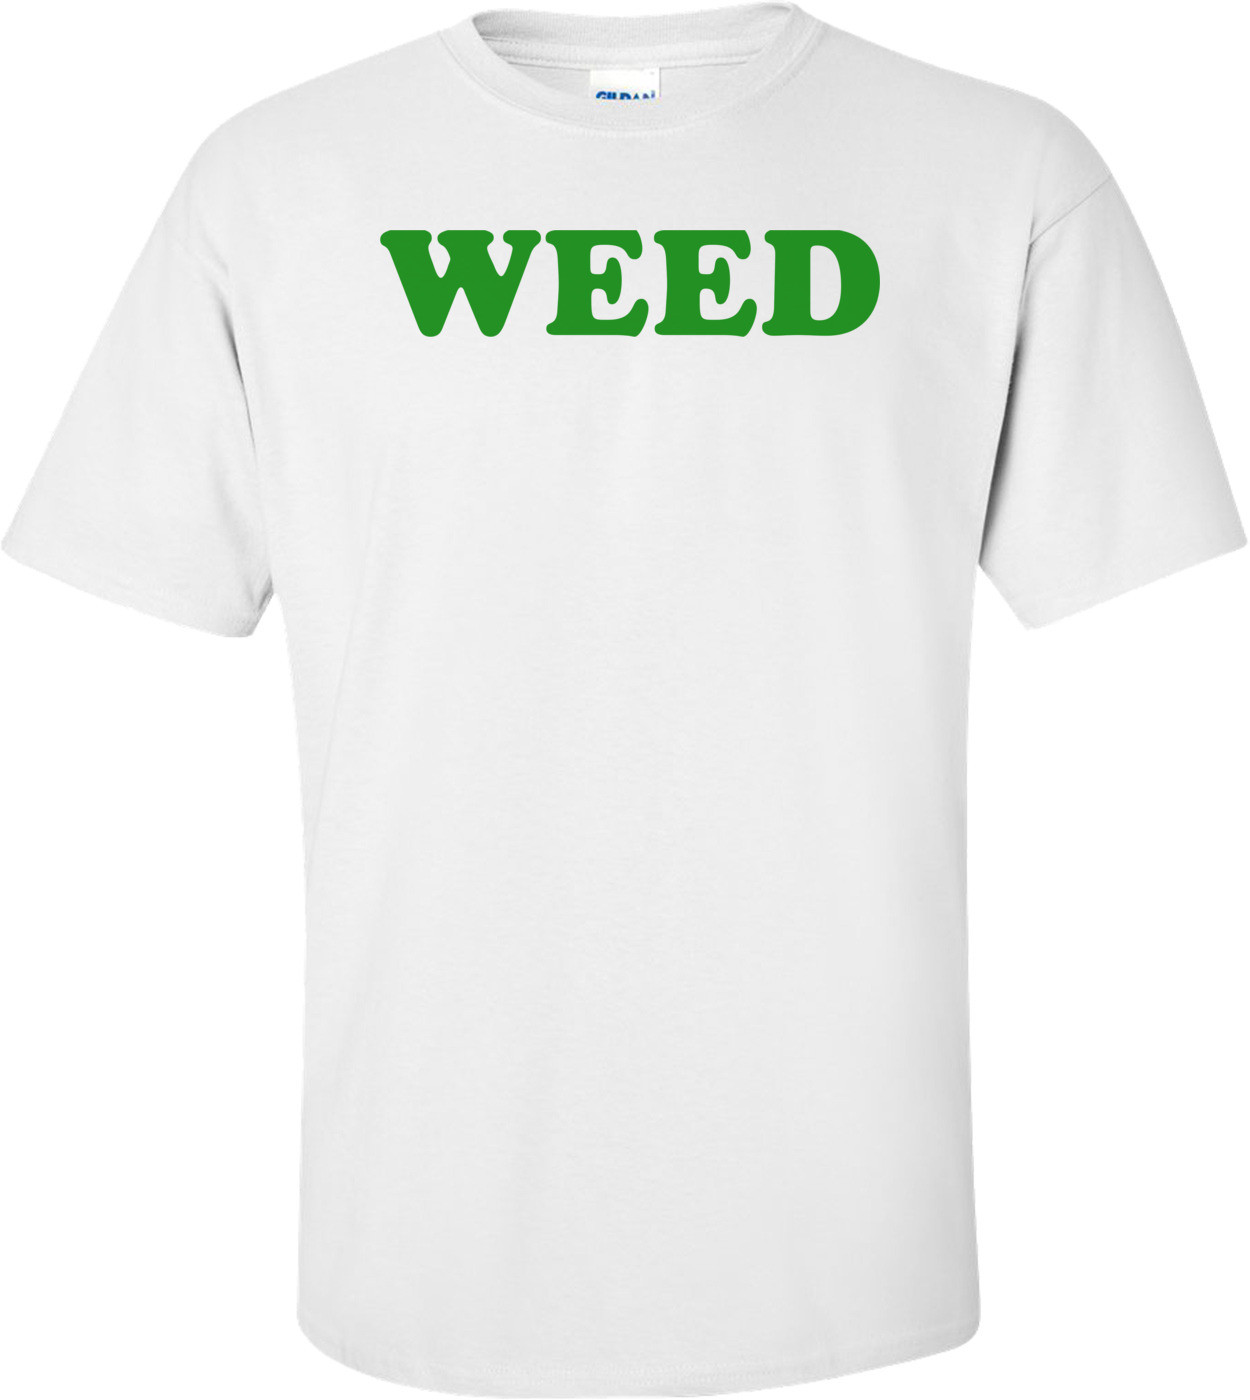 WEED Shirt